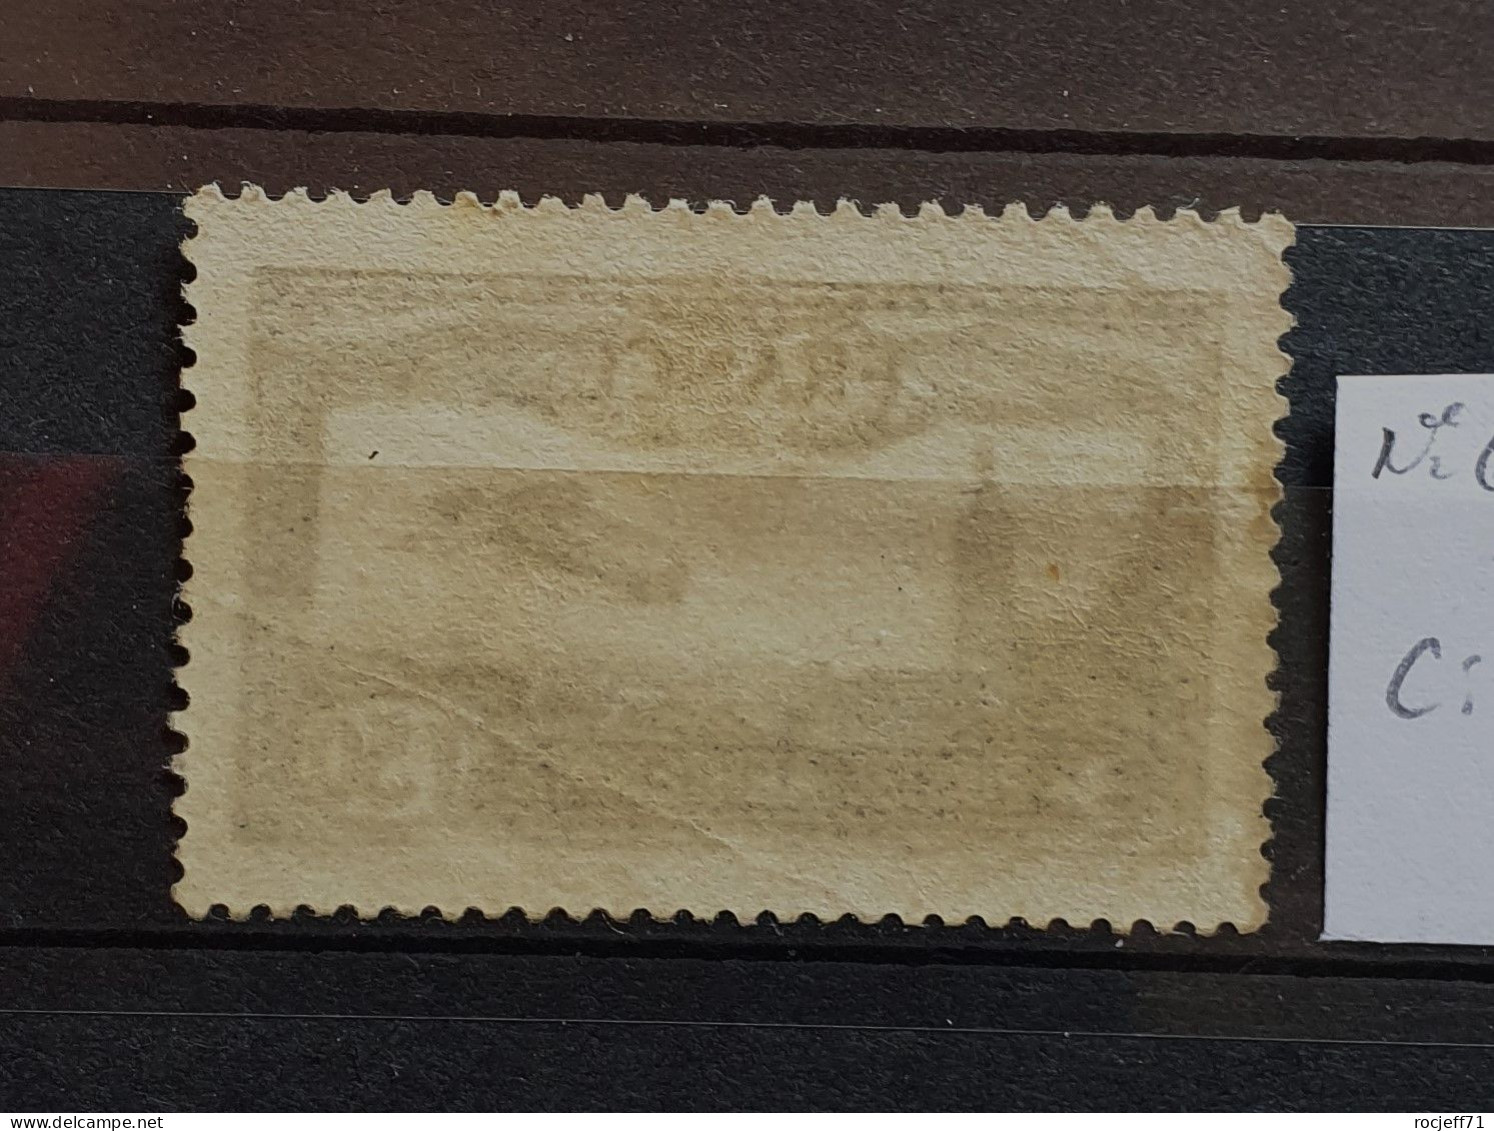 05 - 24 - France - Poste Aérienne N°6 * - MH - 1927-1959 Postfris